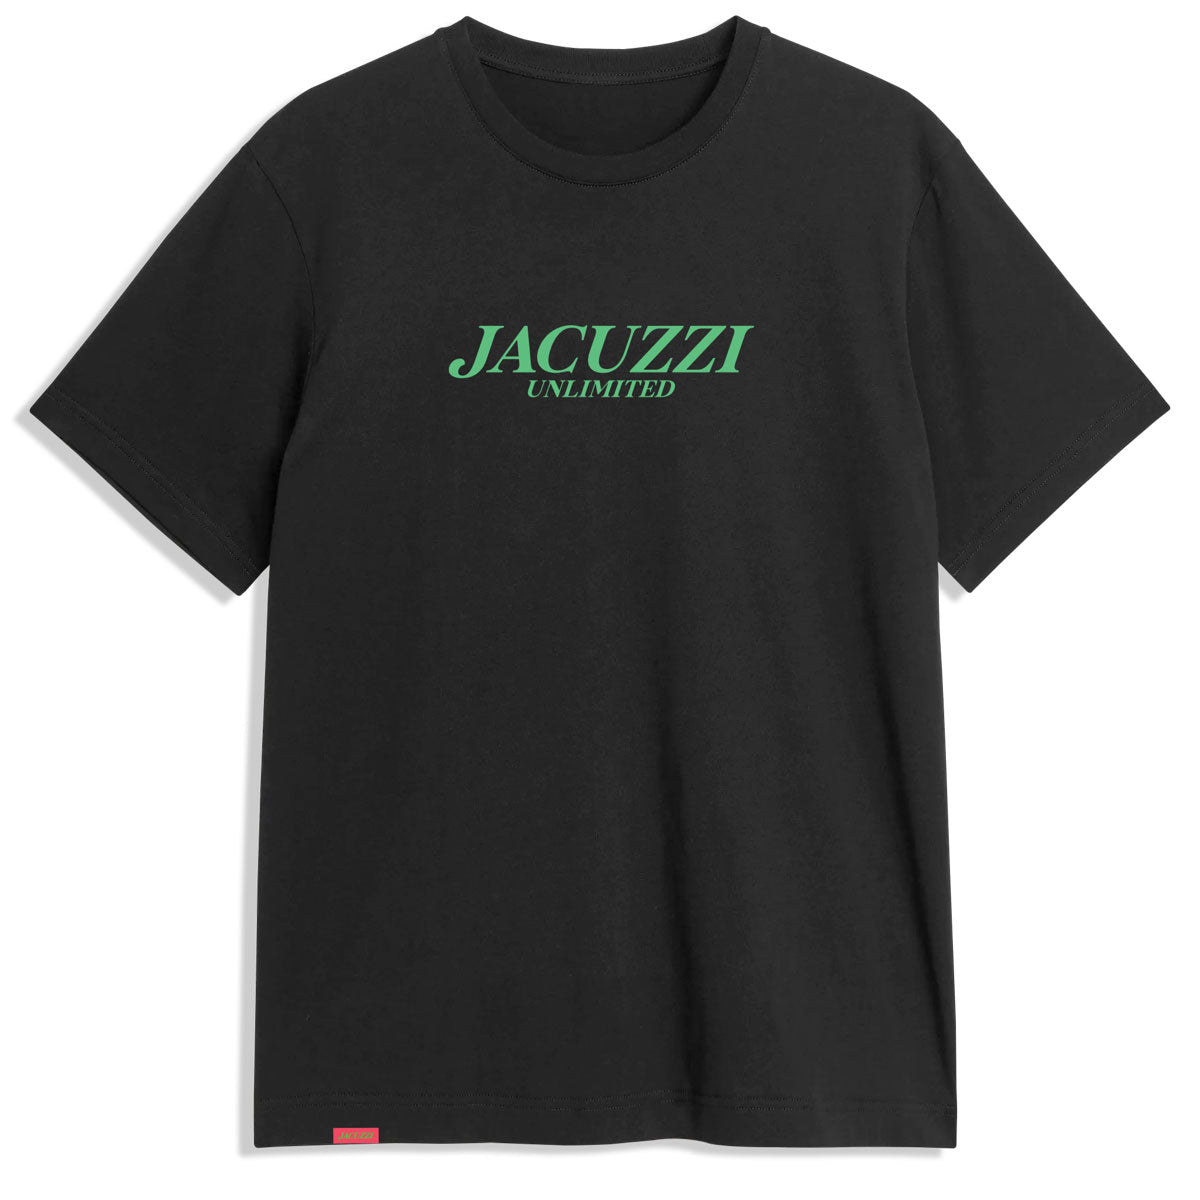 Jacuzzi Flavor T-Shirt - Black image 1